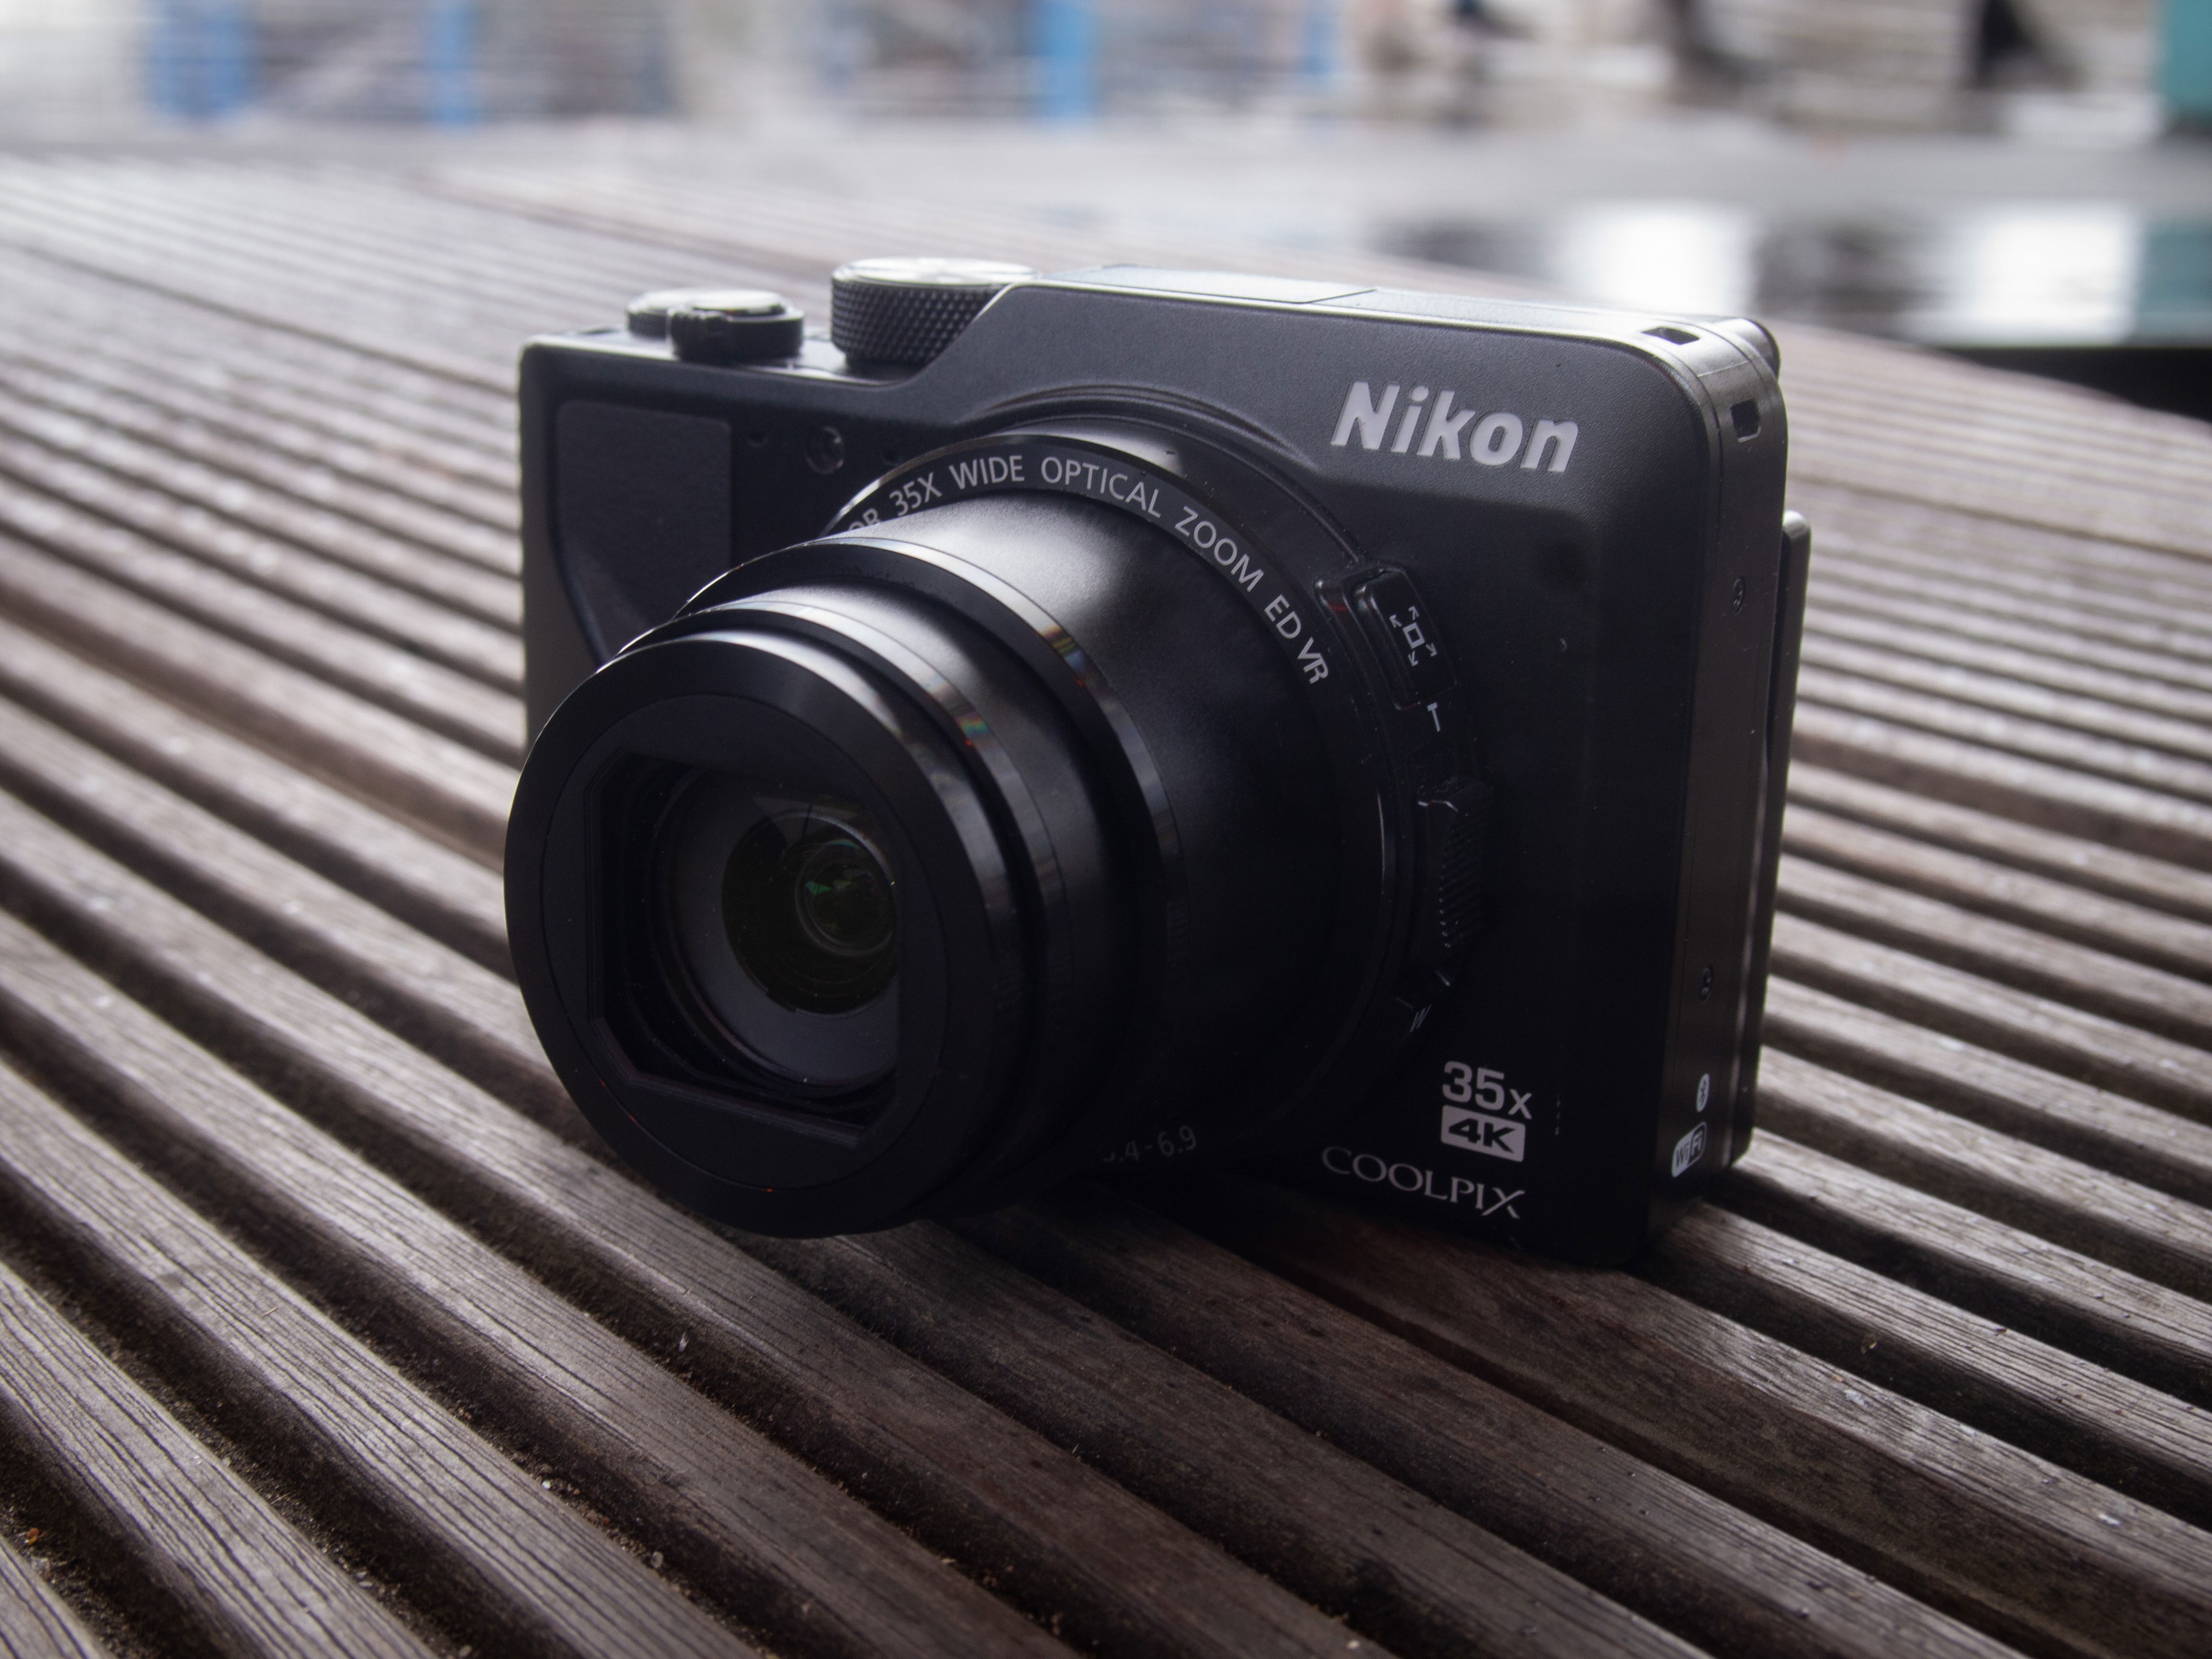 欲しいの  A1000 Nikon デジタルカメラ